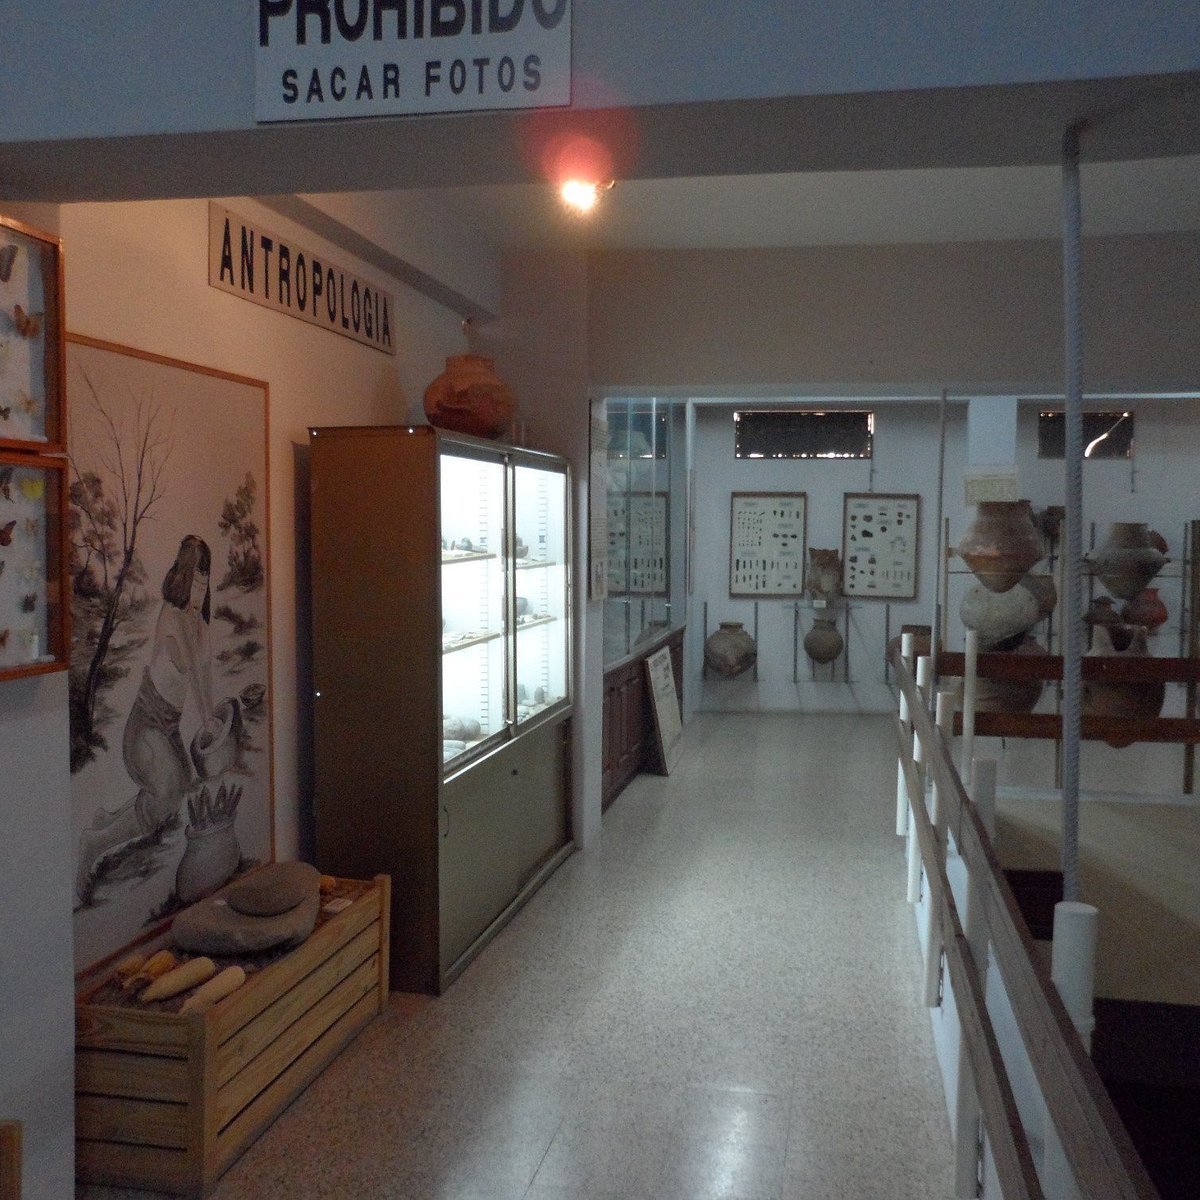 STÄDTISCHES HISTORISCHES MUSEUM VON TERMAS DE RÍO HONDO SANTA DEL ESTERO, ARGENTINIEN